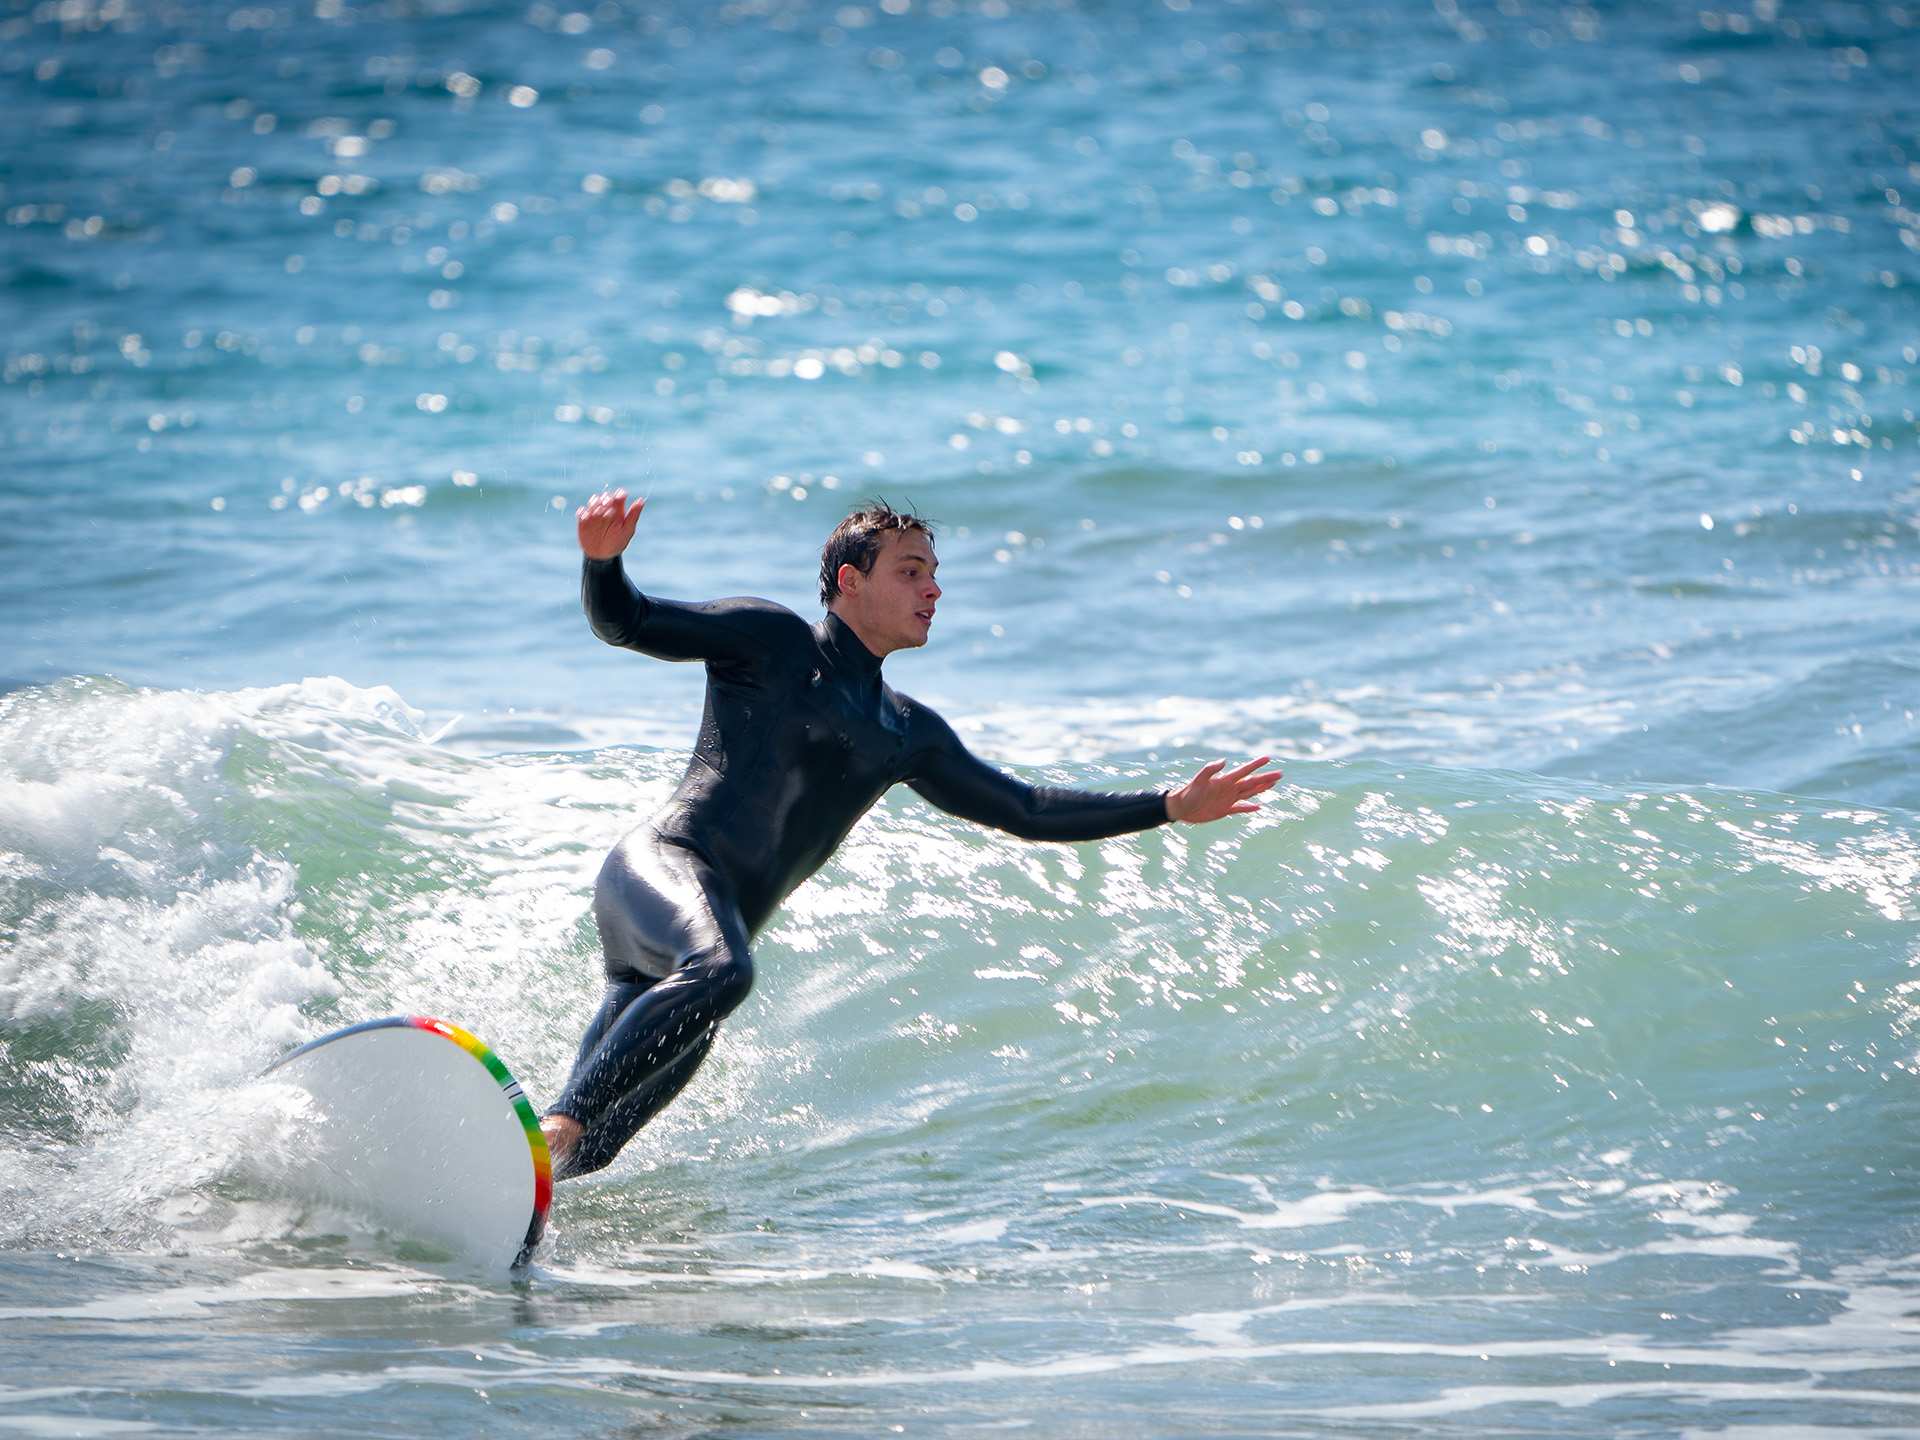 A person surfing at Santa Monica beach